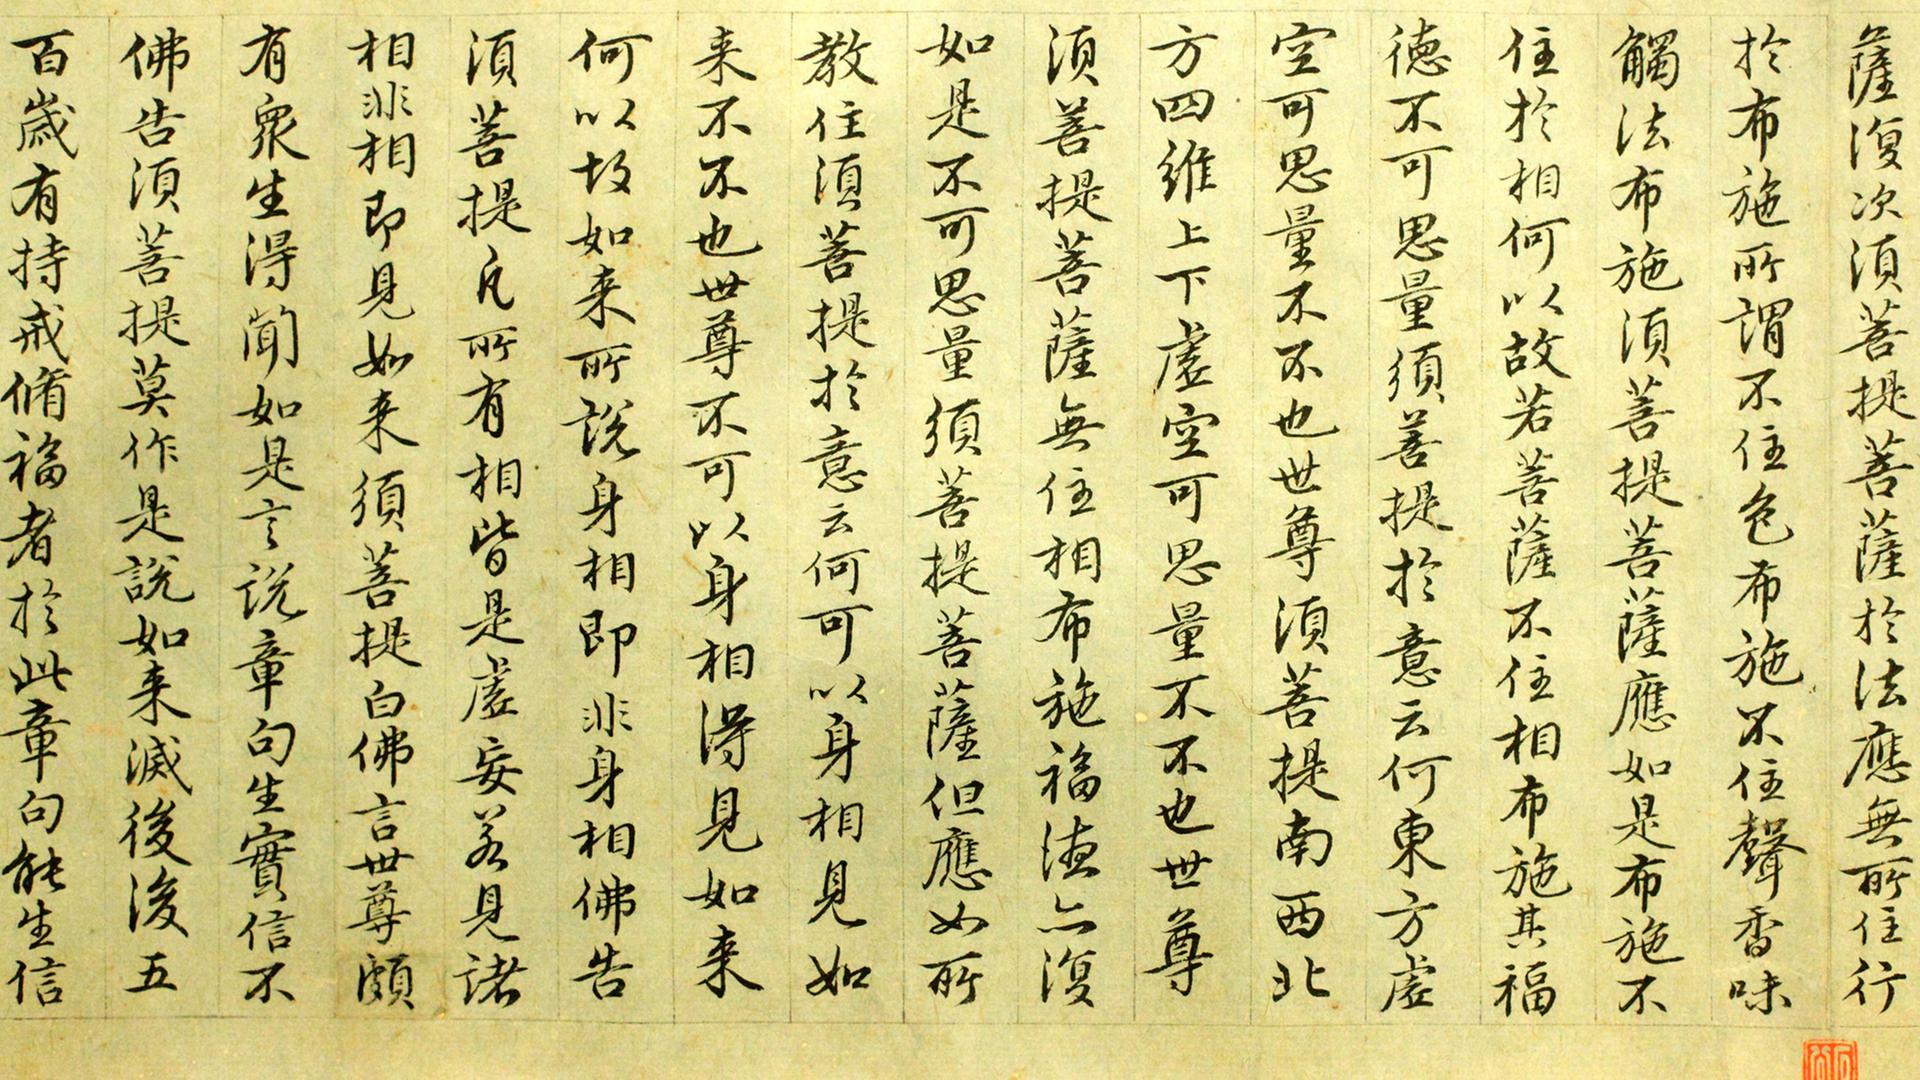 Seitenausschnitt aus einem antiken Buch aus China